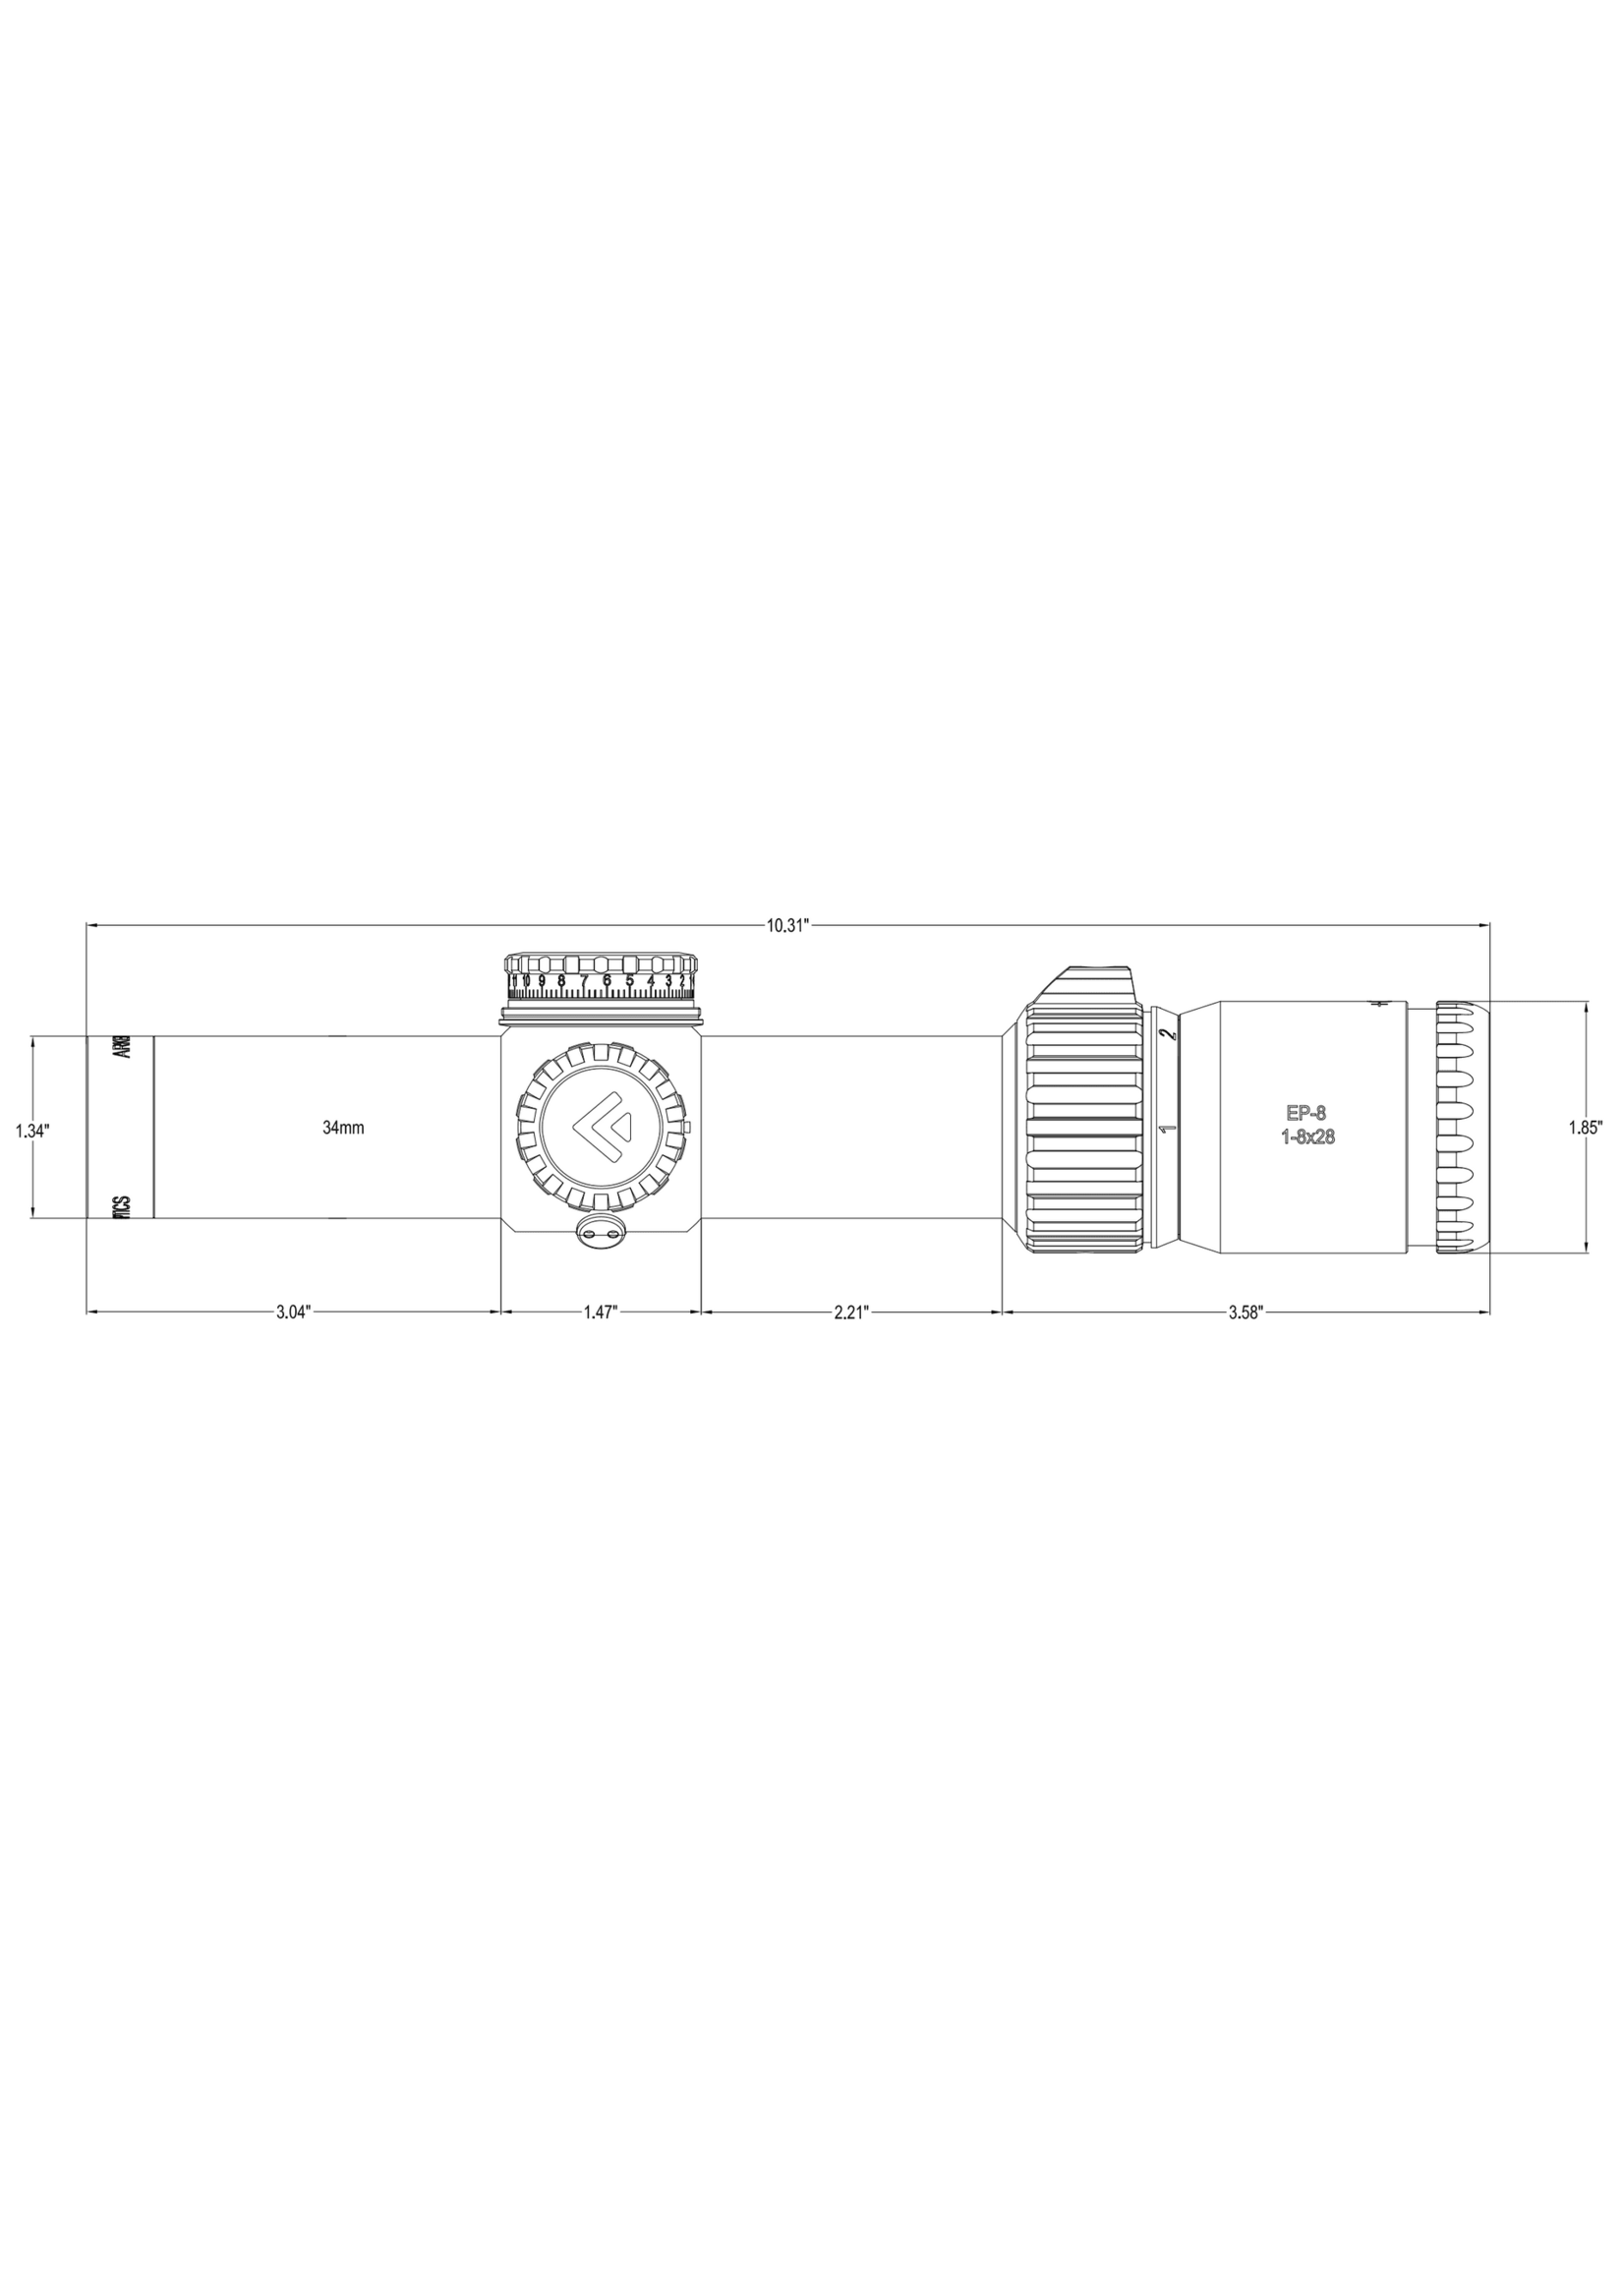 Arken Arken EP8 LPVO 1-8x28 FFP  - 34mm Tube MOA - KL BOX Illuminated Reticle